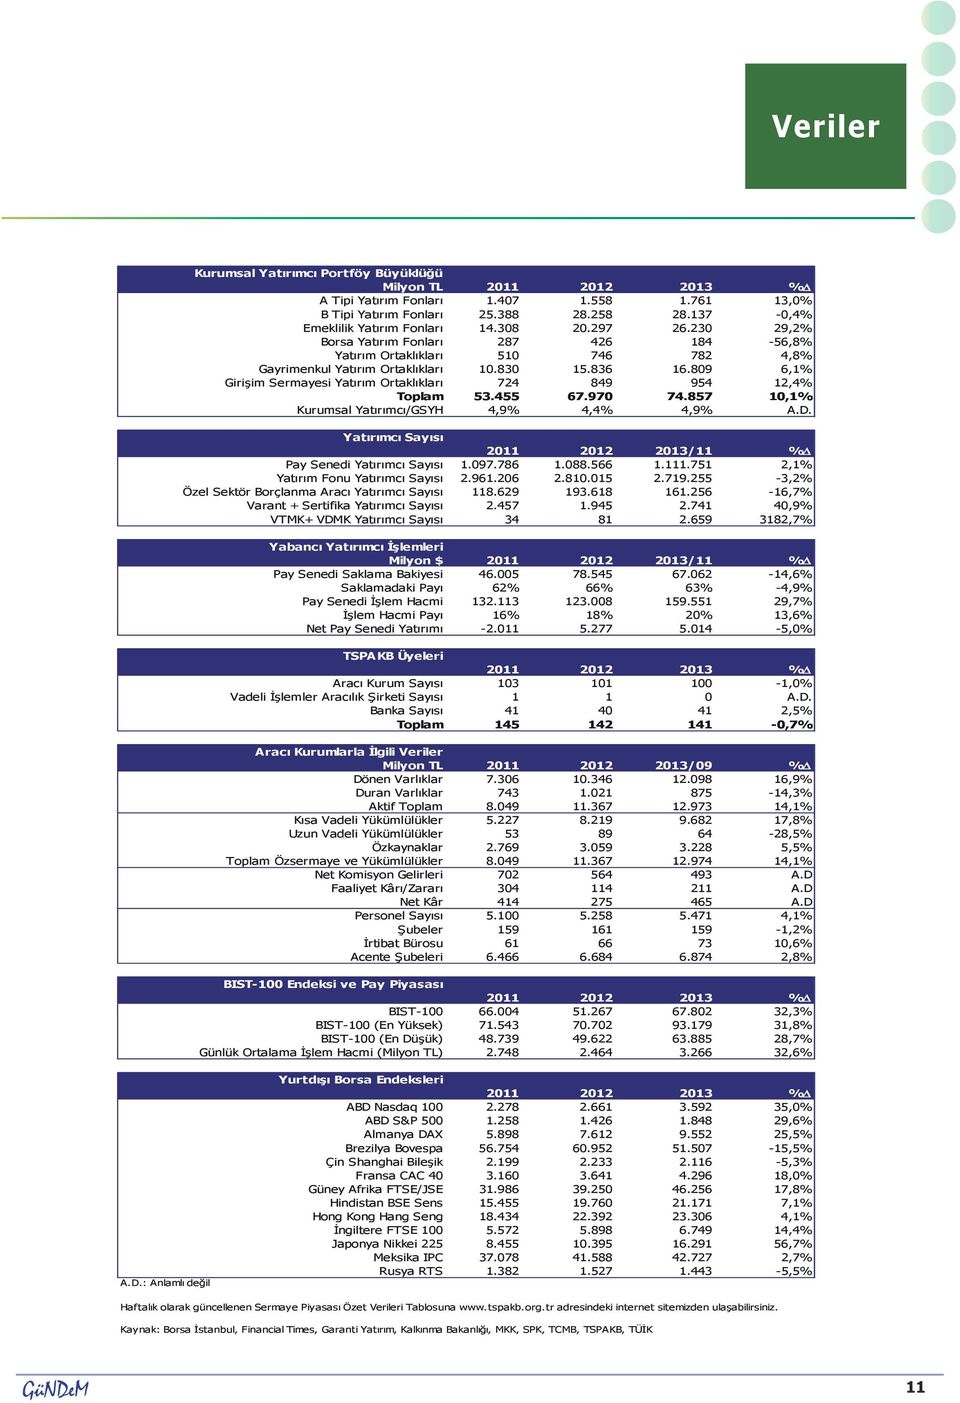 809 6,1% Girişim Sermayesi Yatırım Ortaklıkları 724 849 954 12,4% Toplam 53.455 67.970 74.857 10,1% Kurumsal Yatırımcı/GSYH 4,9% 4,4% 4,9% A.D.